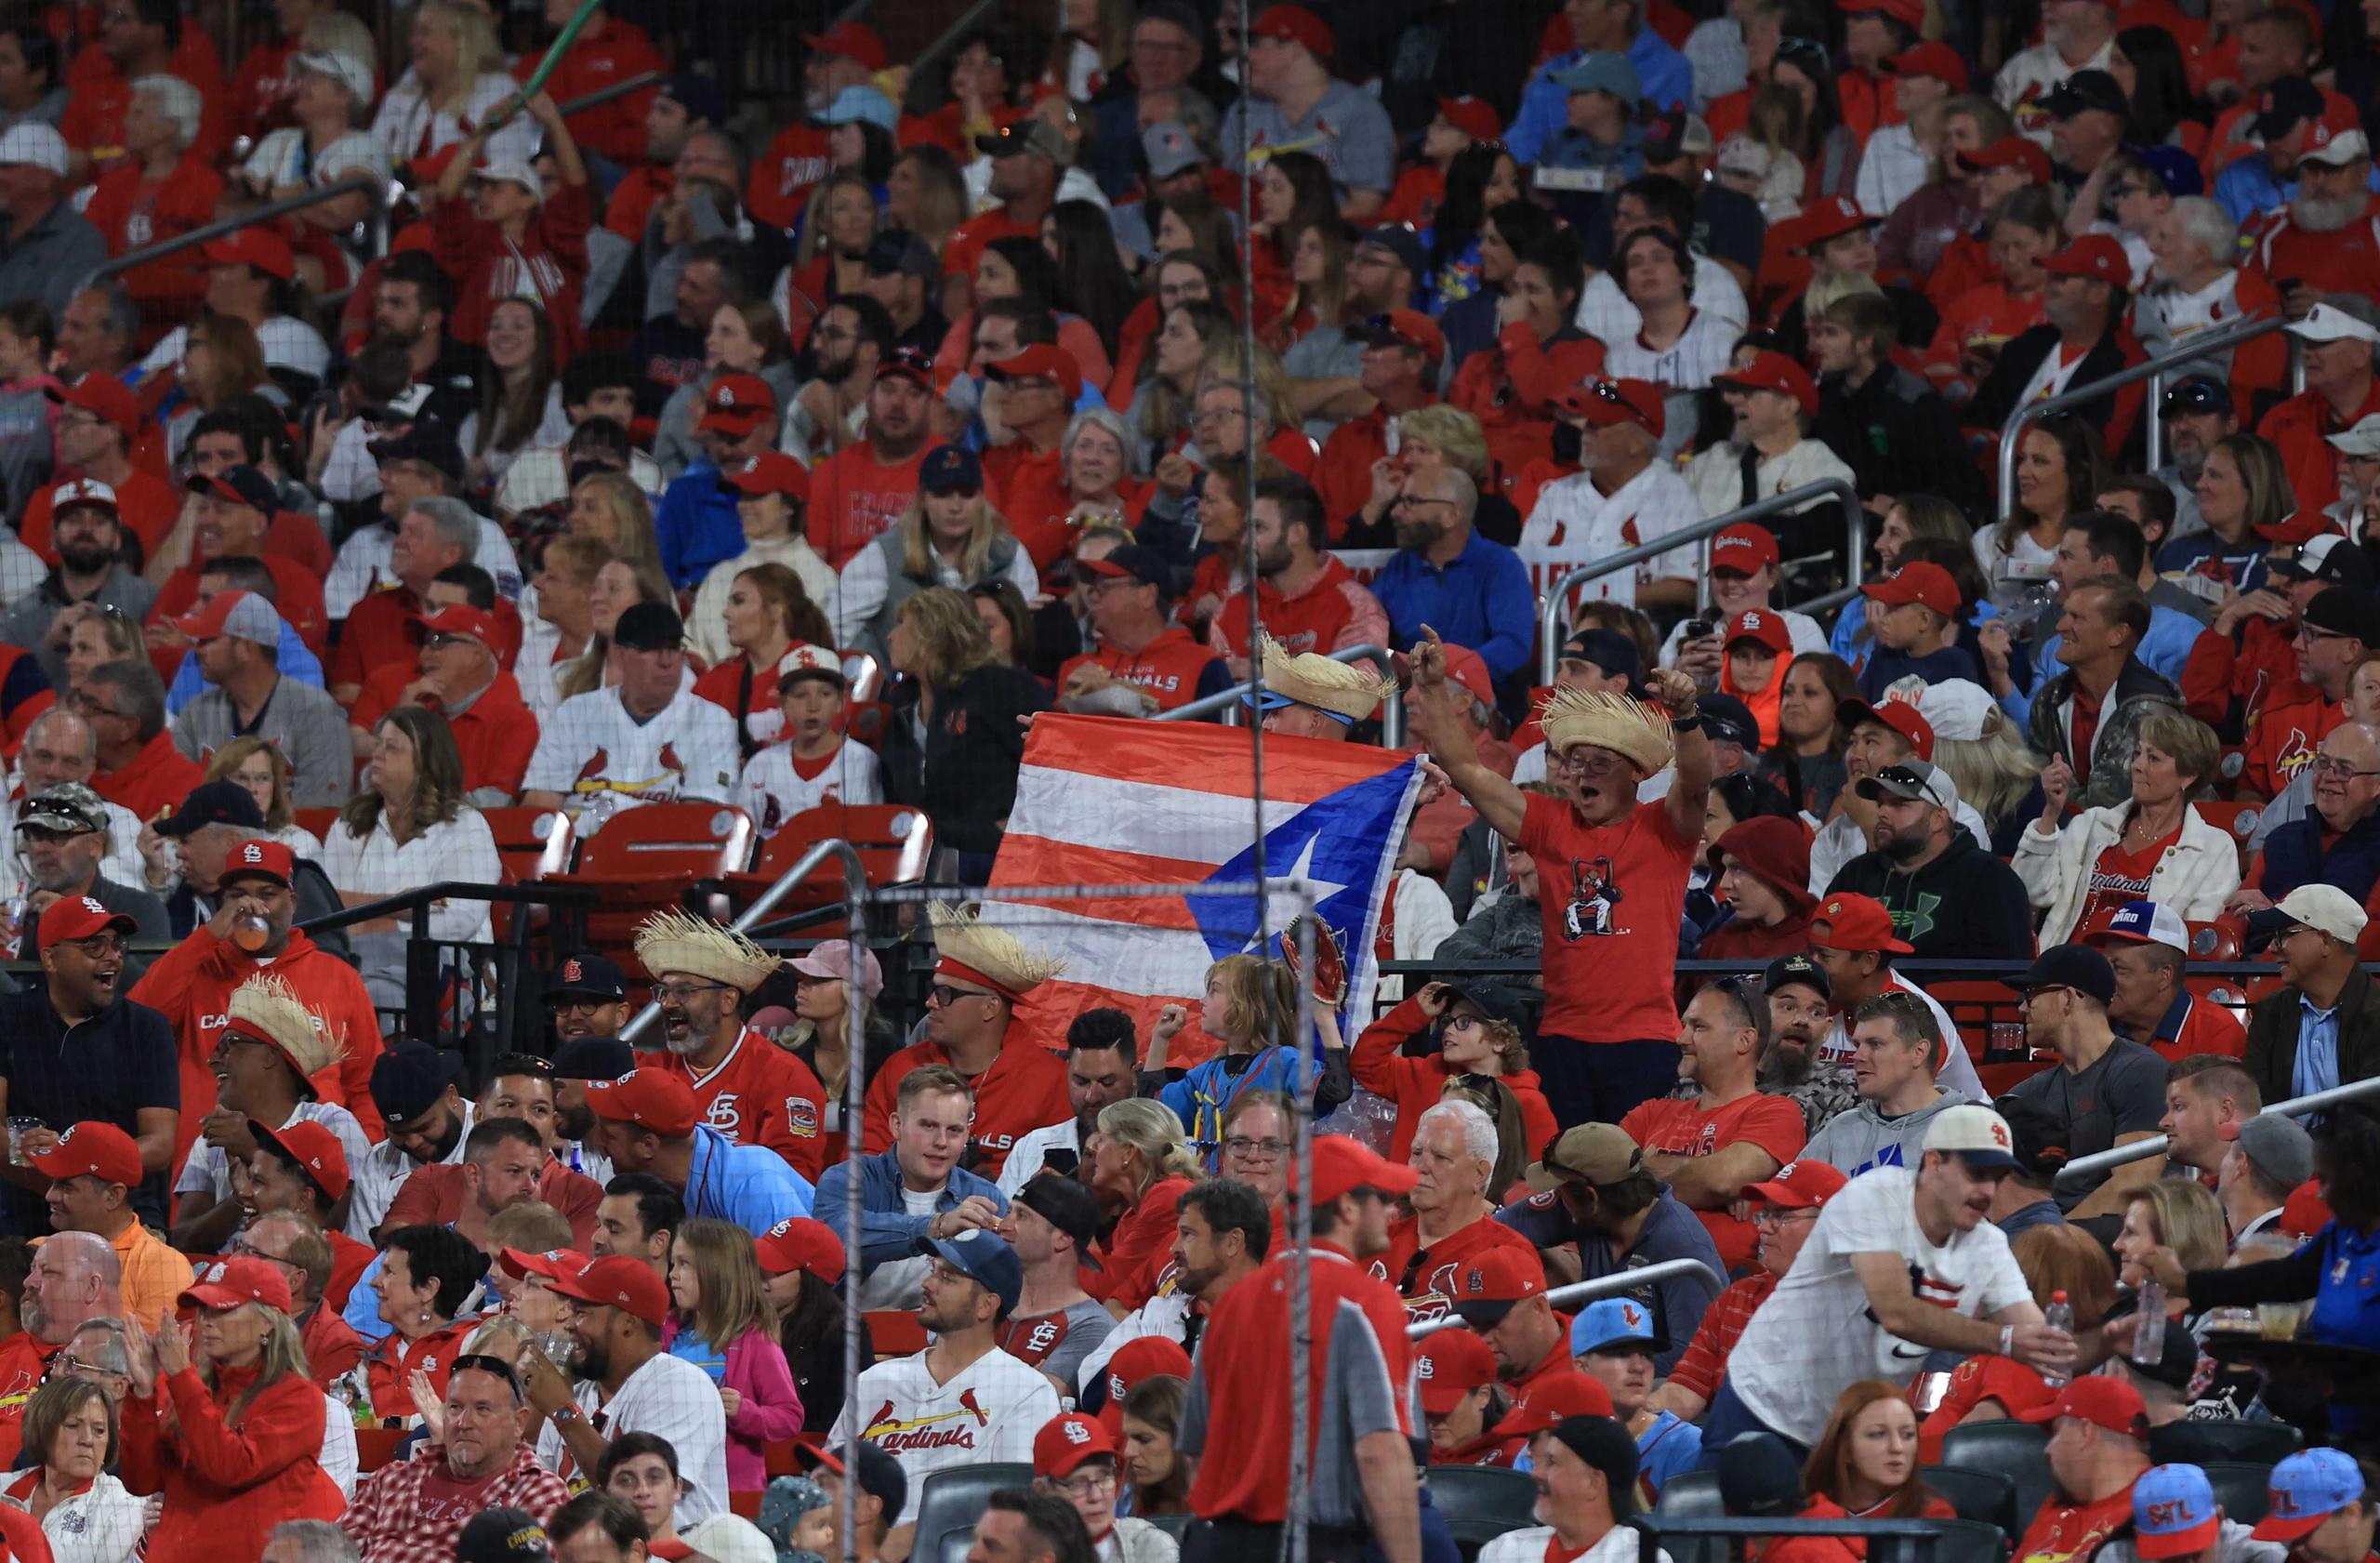 La bandera de Puerto Rico hizo su aparición en las gradas del Busch Stadium.